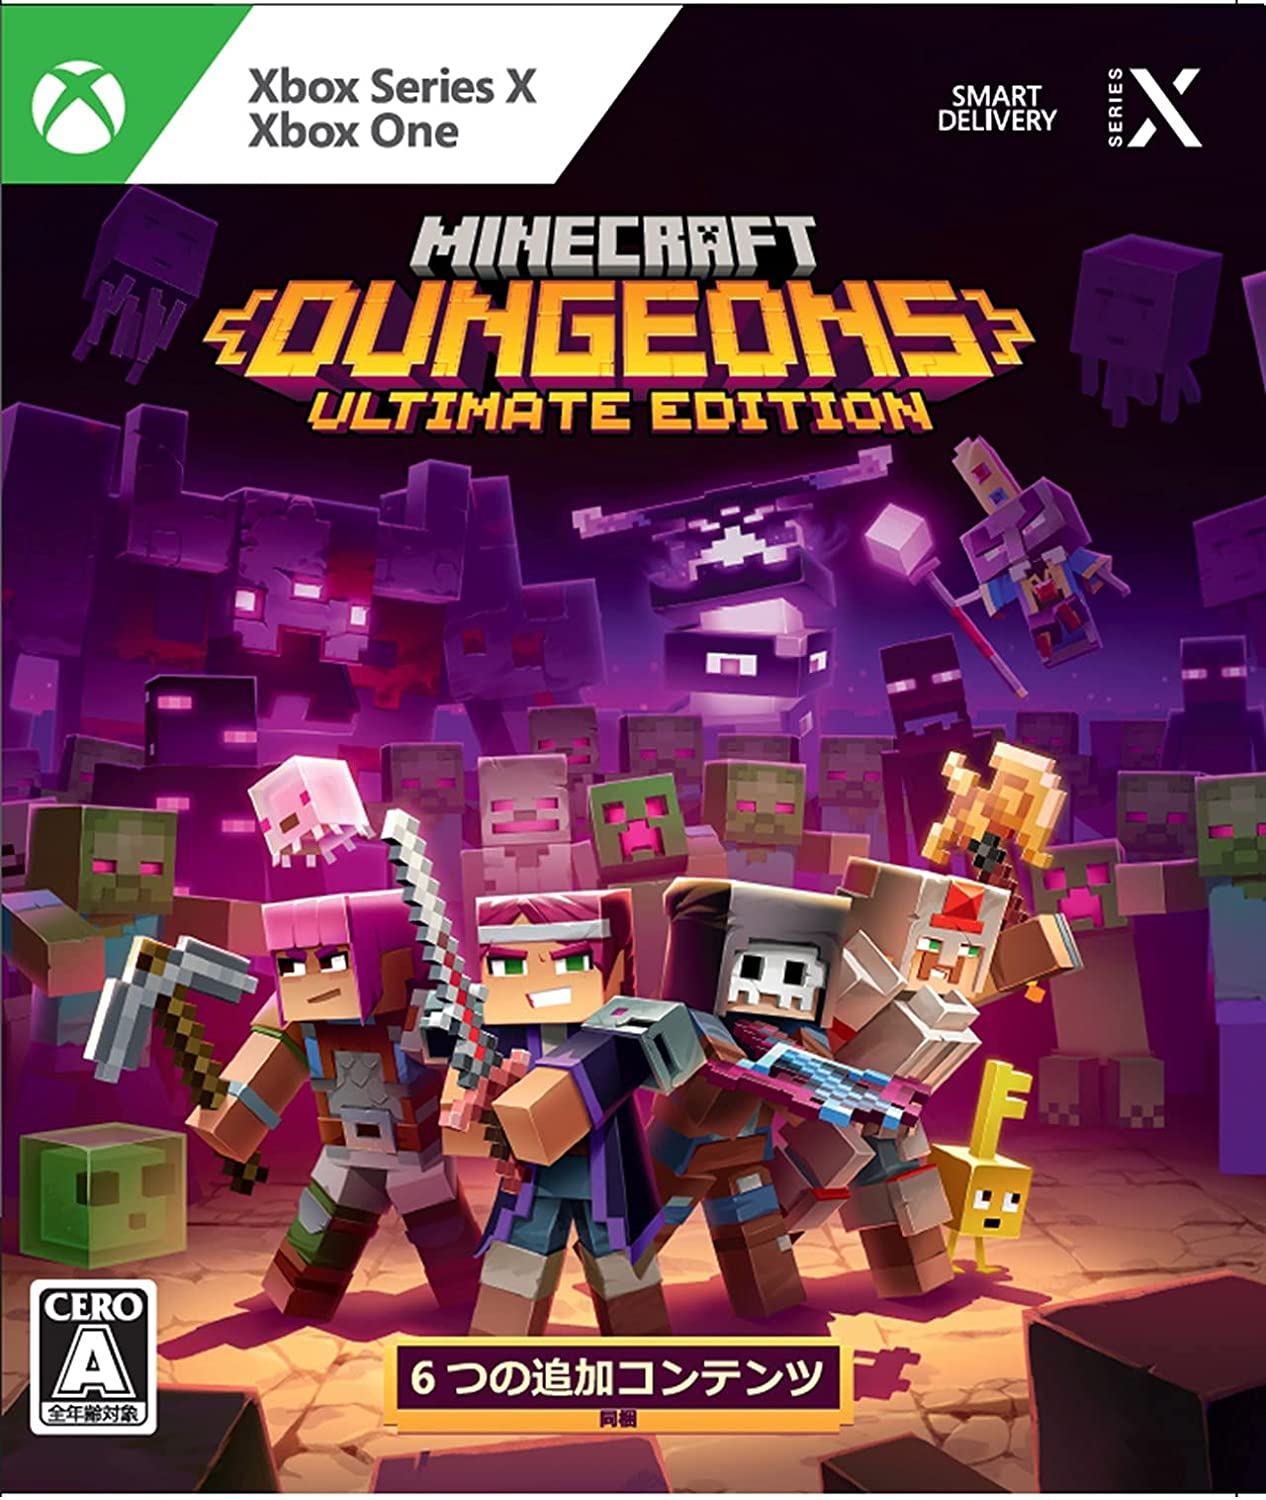 Minecraft Dungeons: confira detalhes sobre o novo jogo para o Xbox One